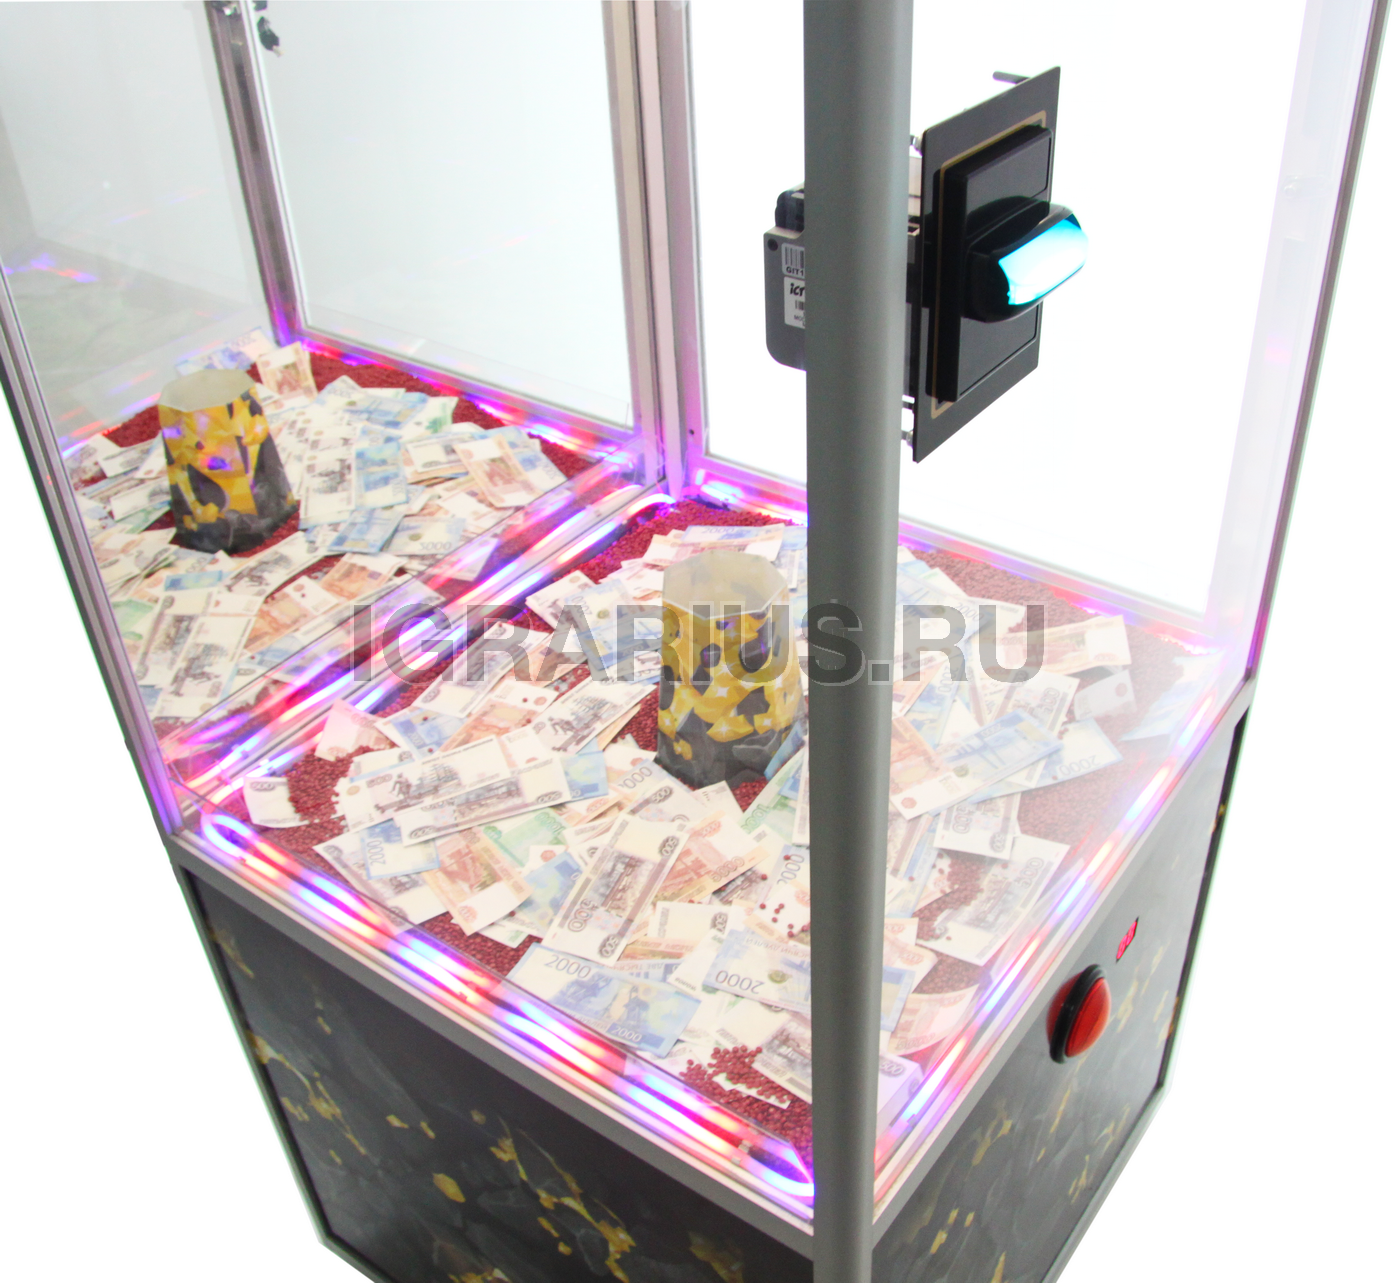 Игровой автомат купить в беларуси игровые автоматы играть в клубничку